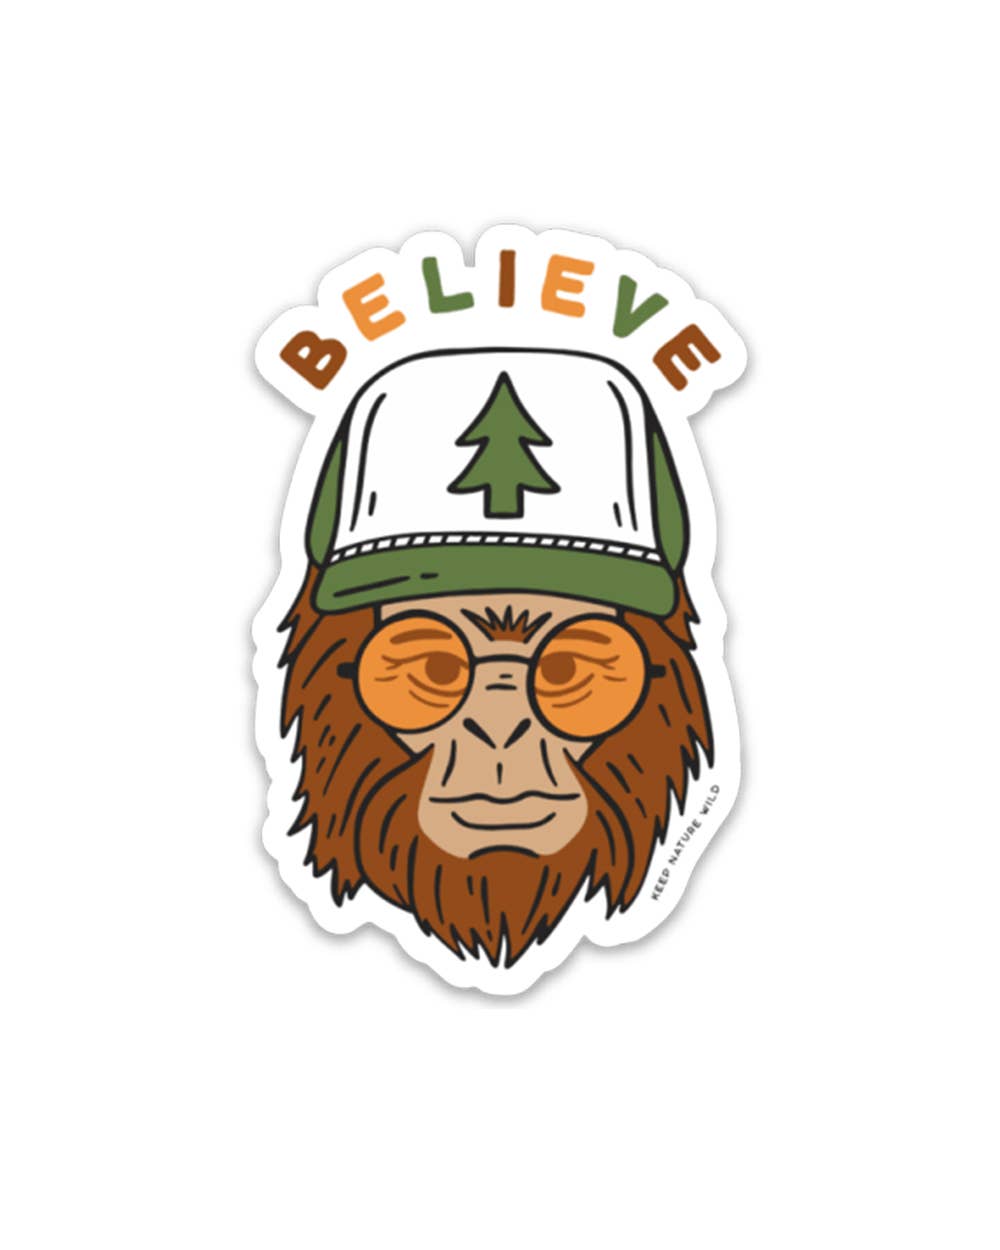 Believe sasquatch sticker by Keep Nature Wild